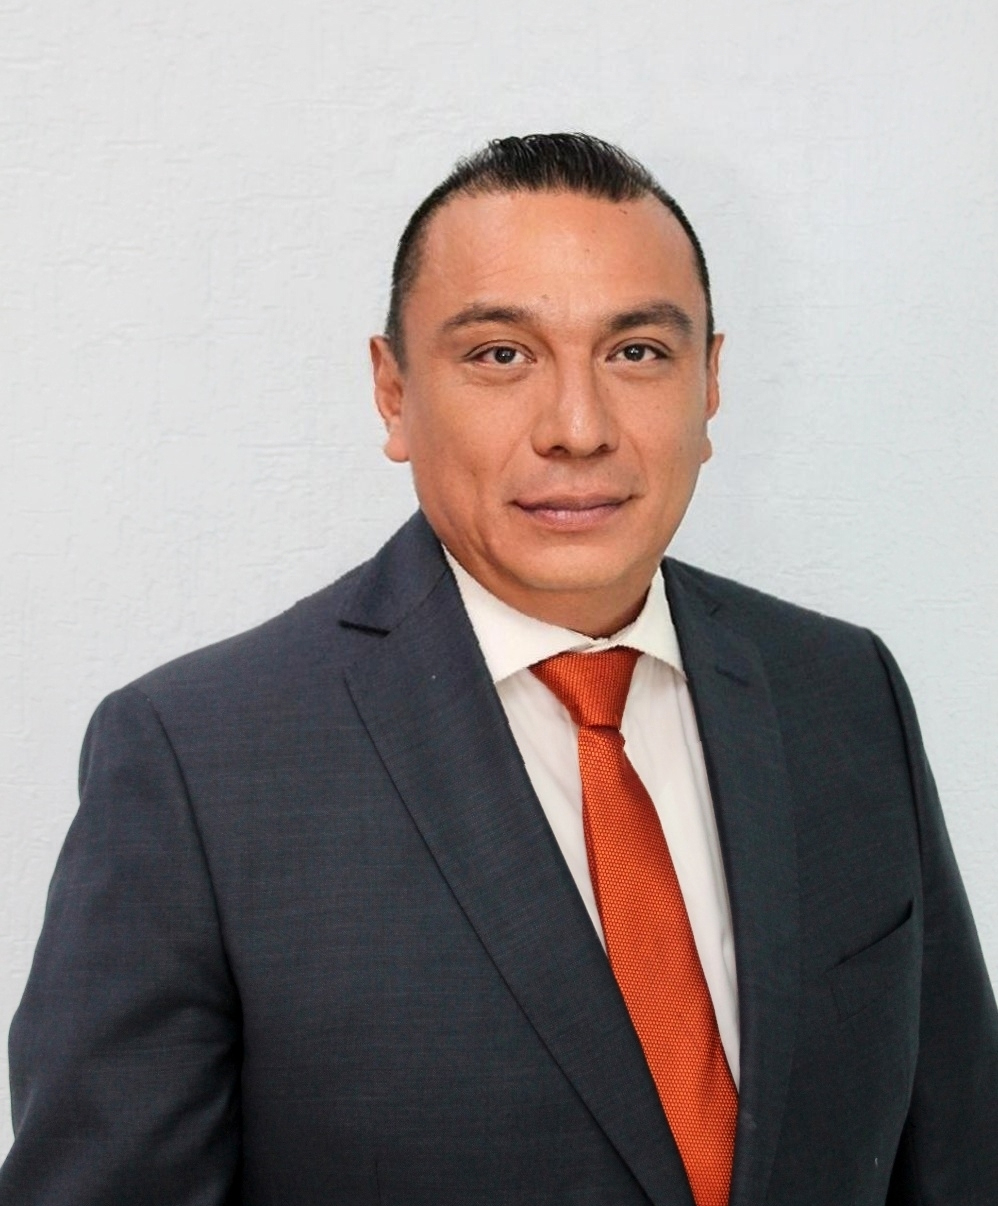 Lic. Gregorio Castañeda Hernández (Director de administración)